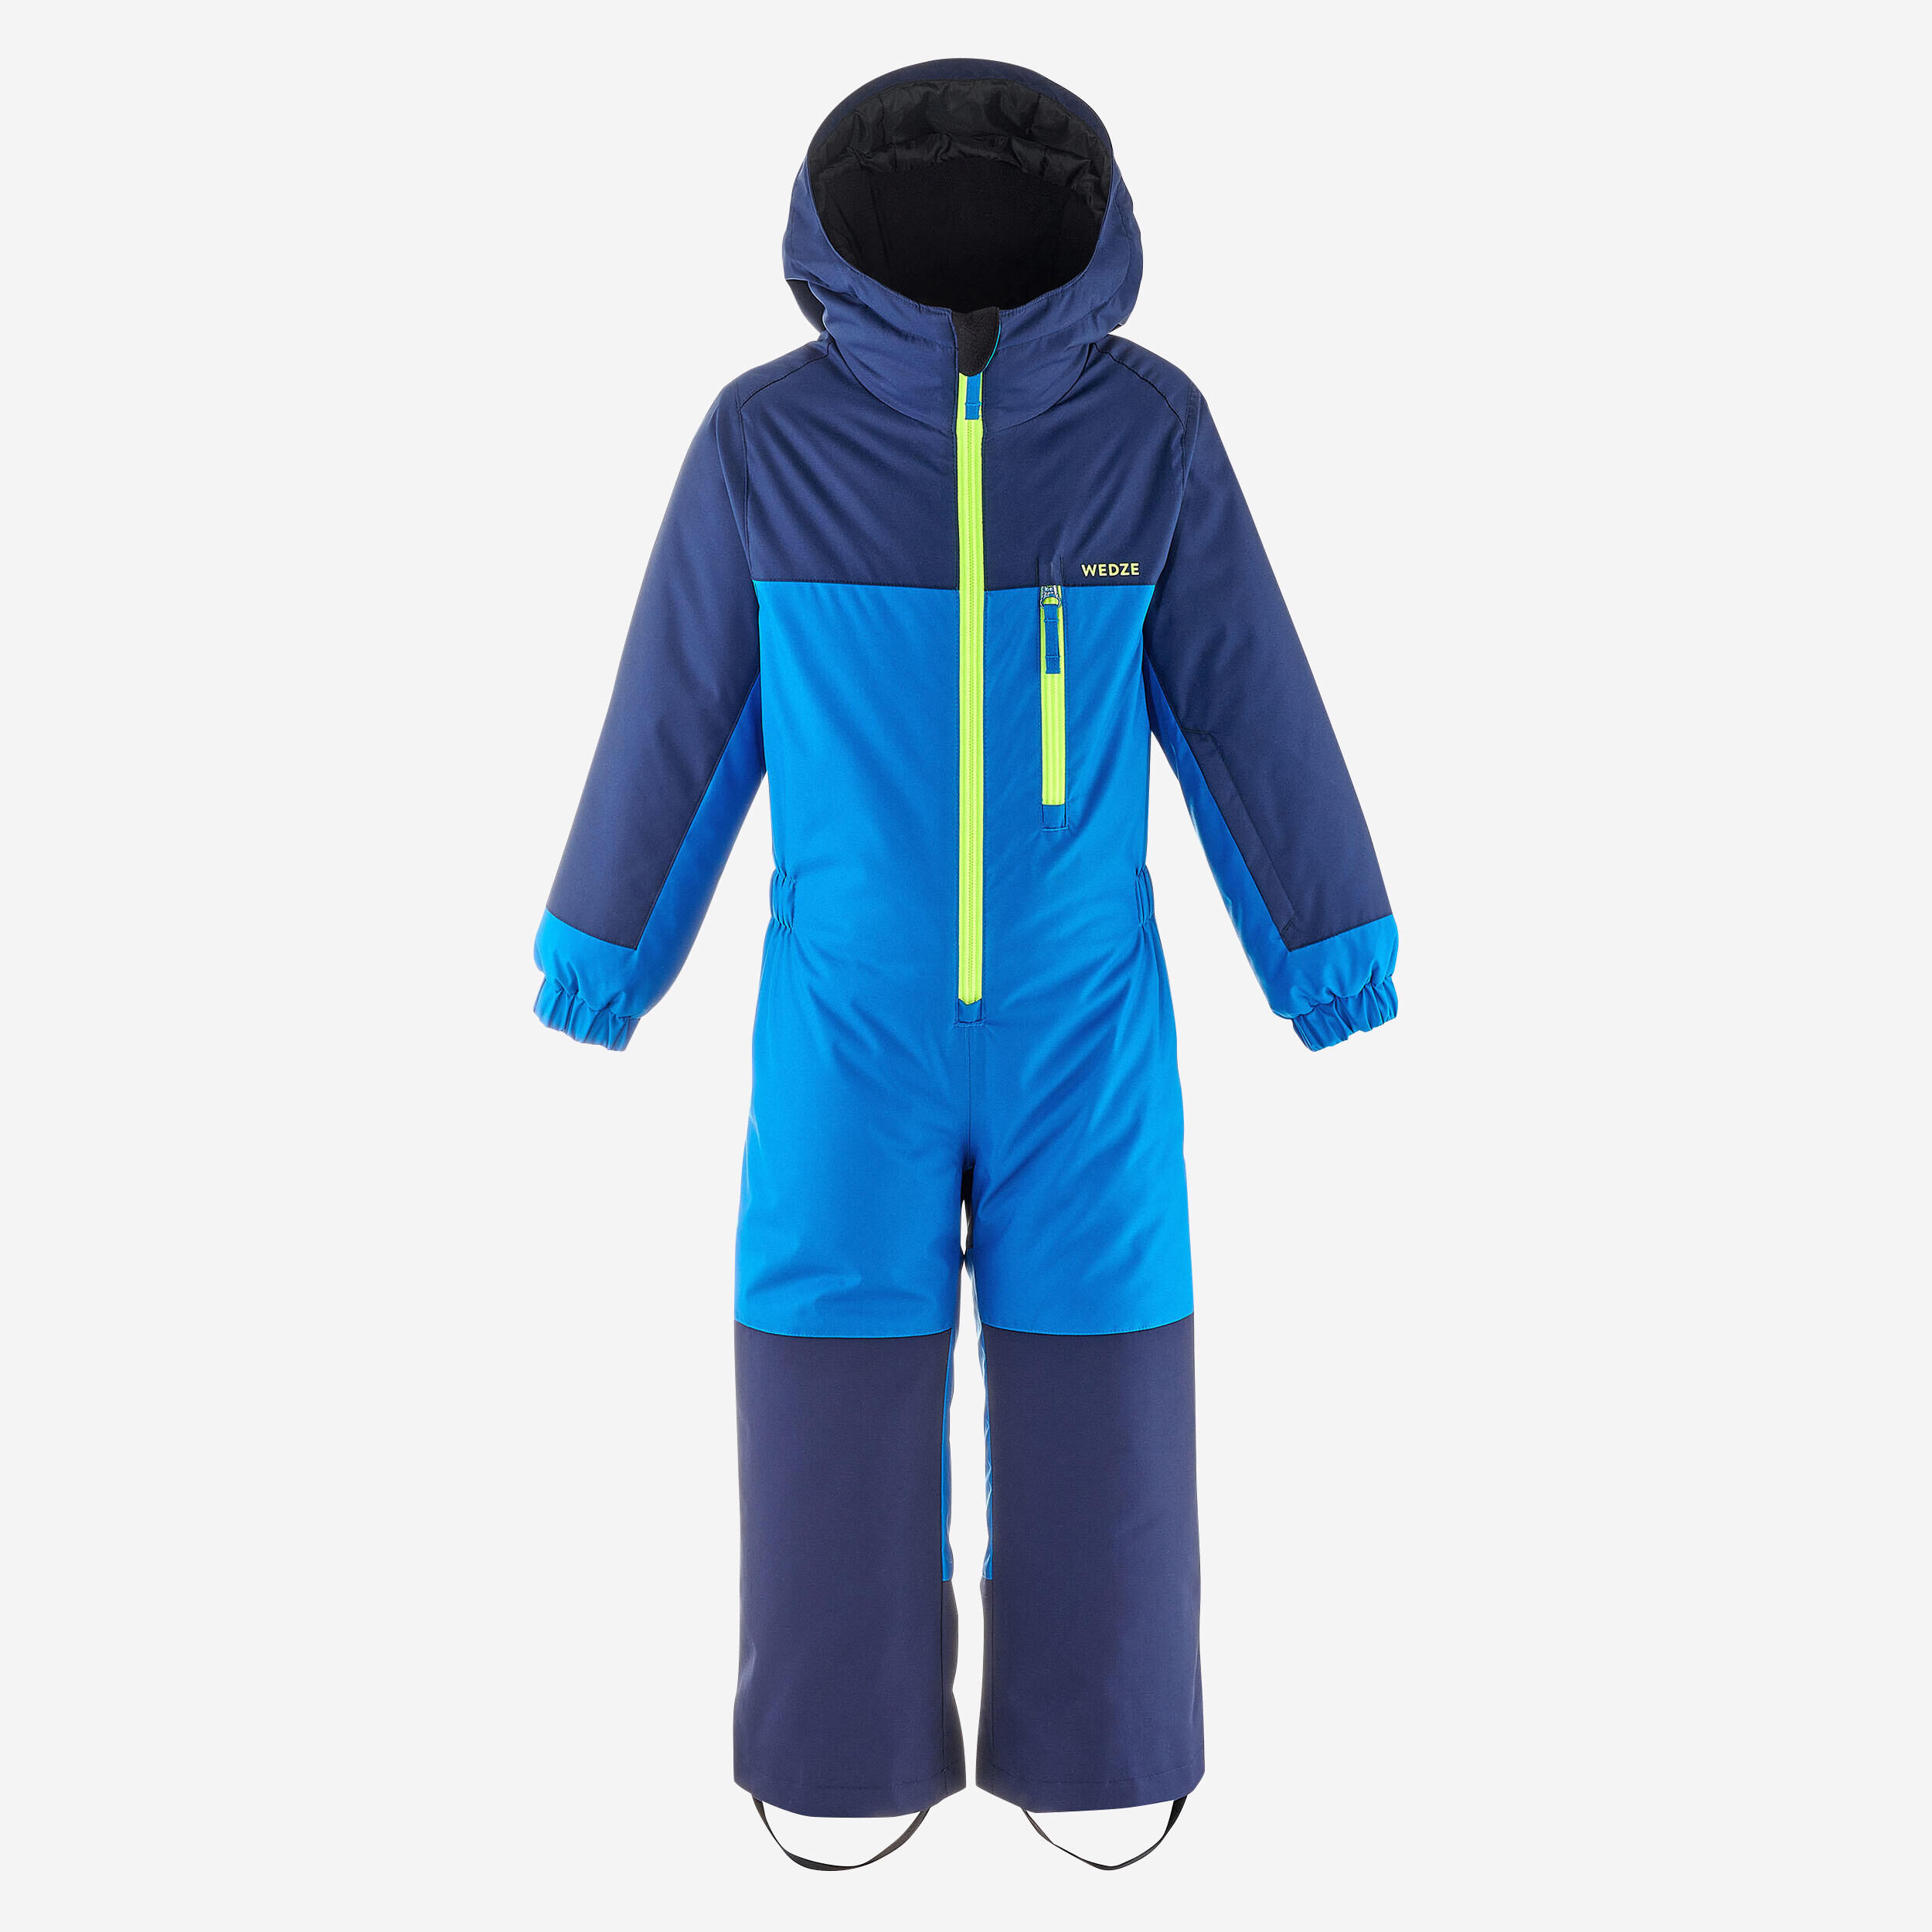 WEDZE Kids’ Warm and Waterproof Ski Suit - 100 Blue